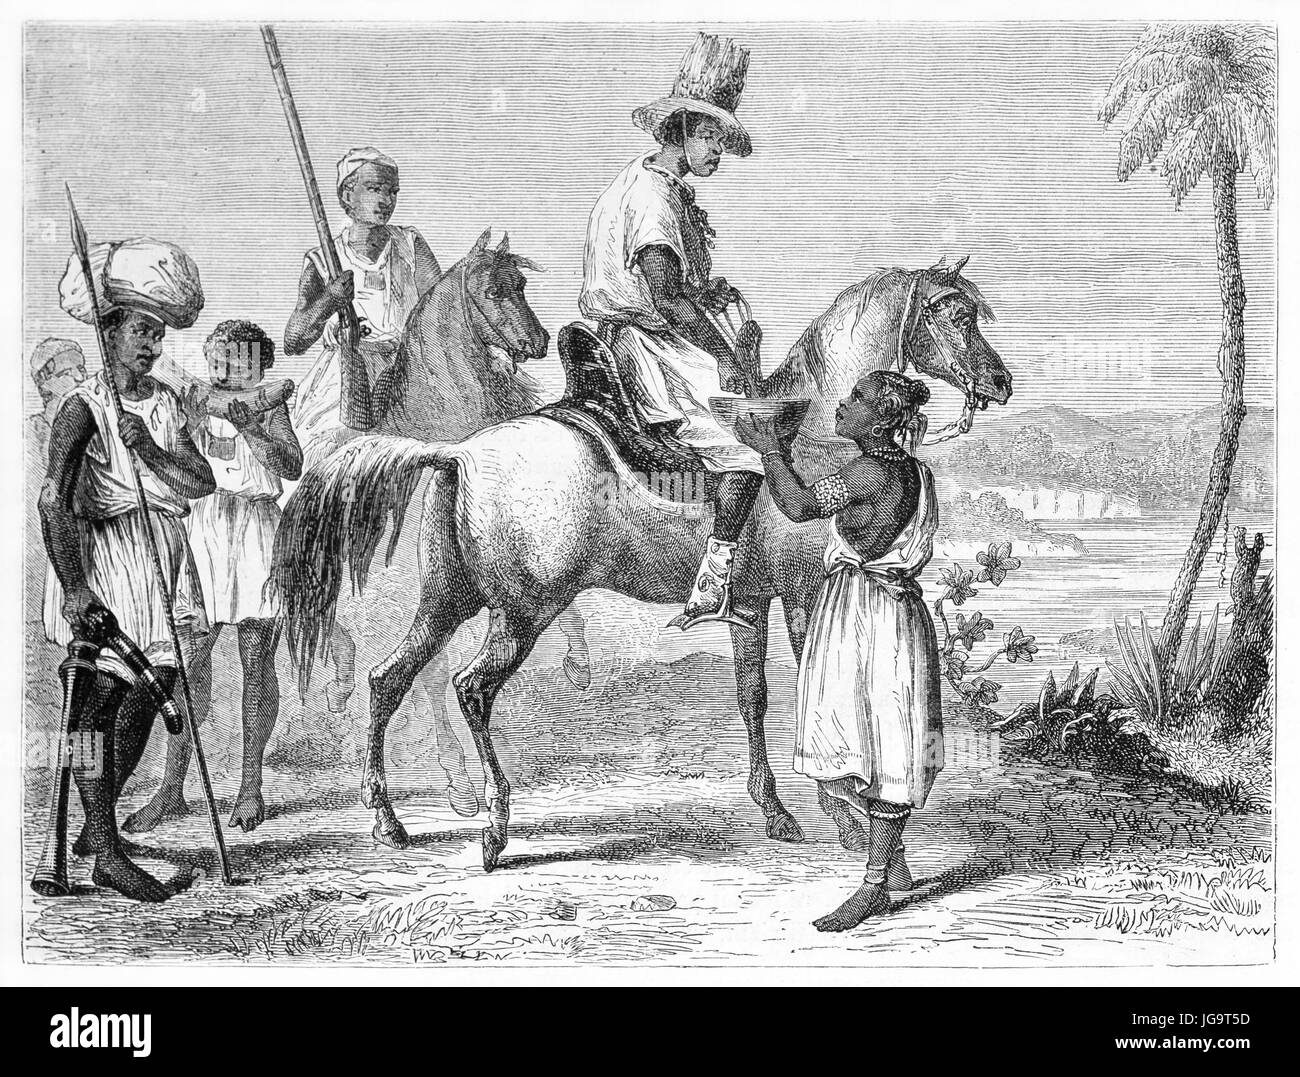 la mujer senegalesa da objetos artesanales a los hombres a caballo en el desierto africano. Antiguo arte de estilo grabado en tonos grises de Pelcoq, publicado en 1861 Foto de stock